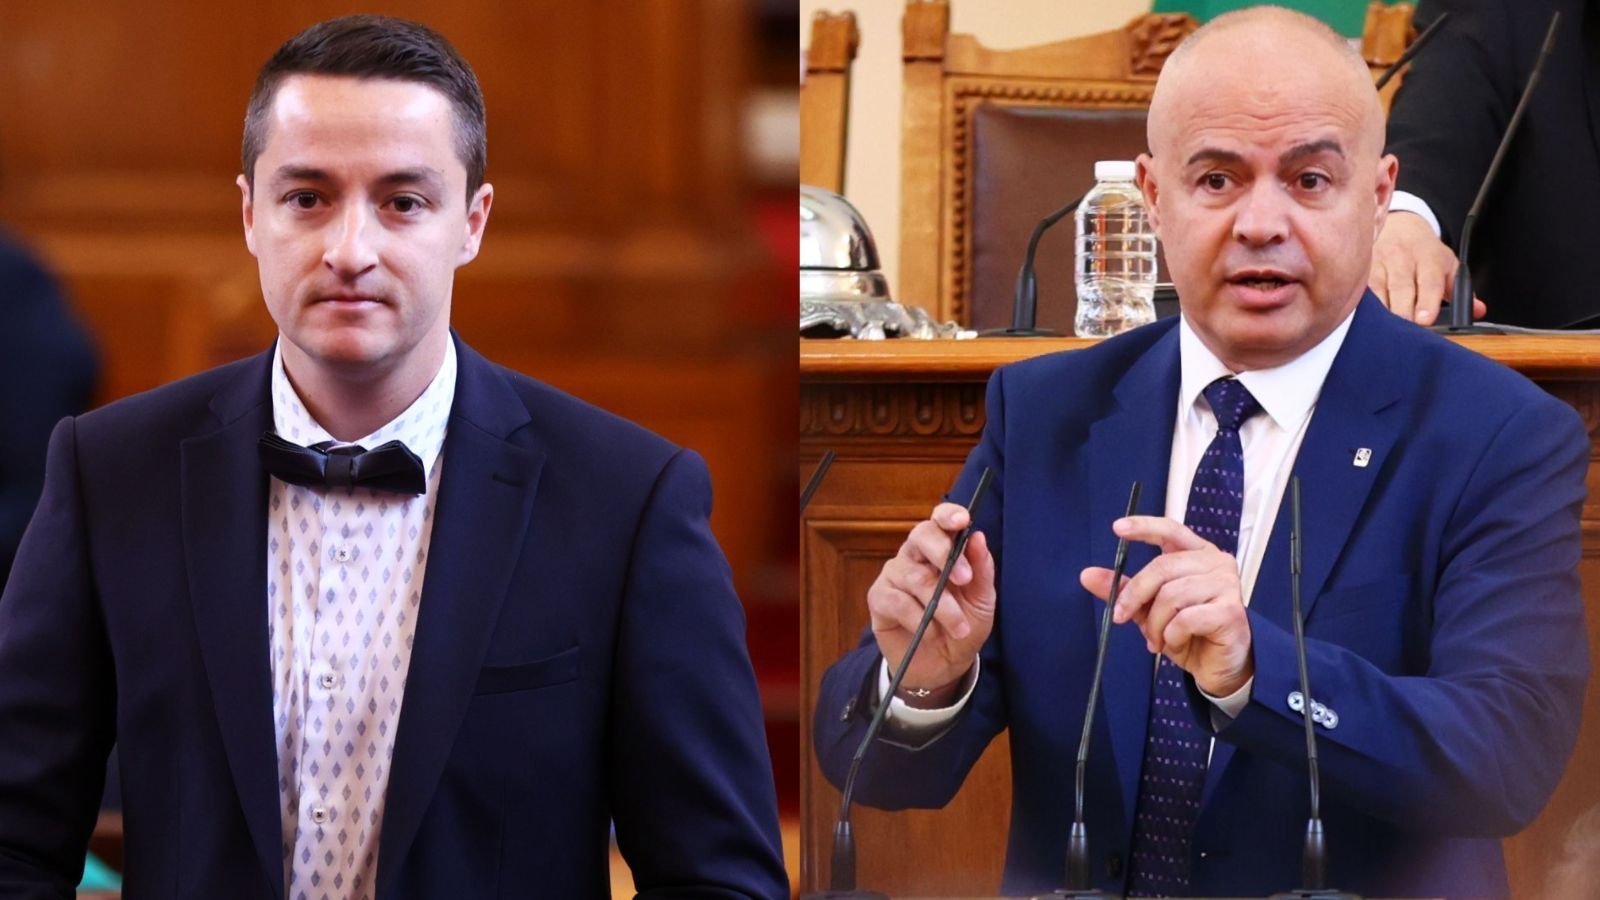 Разпра на тема морал породи и минидебат между БСП и бившия им колега, депутат от гражданската квота, Явор Божанков